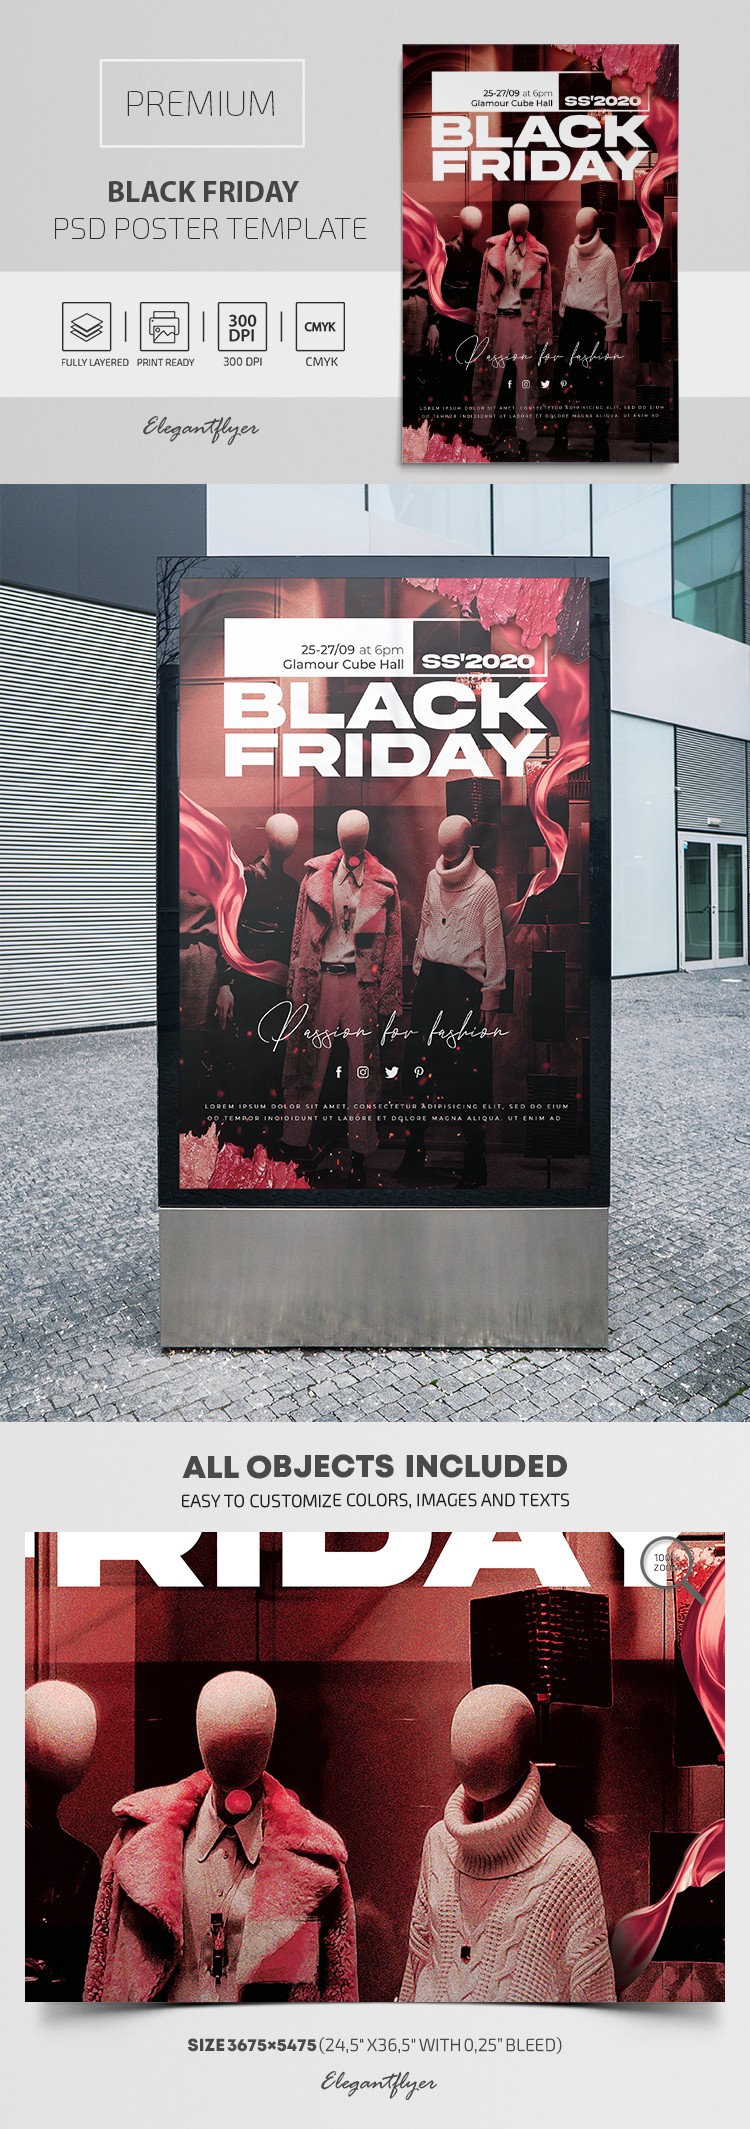 Black Friday Poster by ElegantFlyer